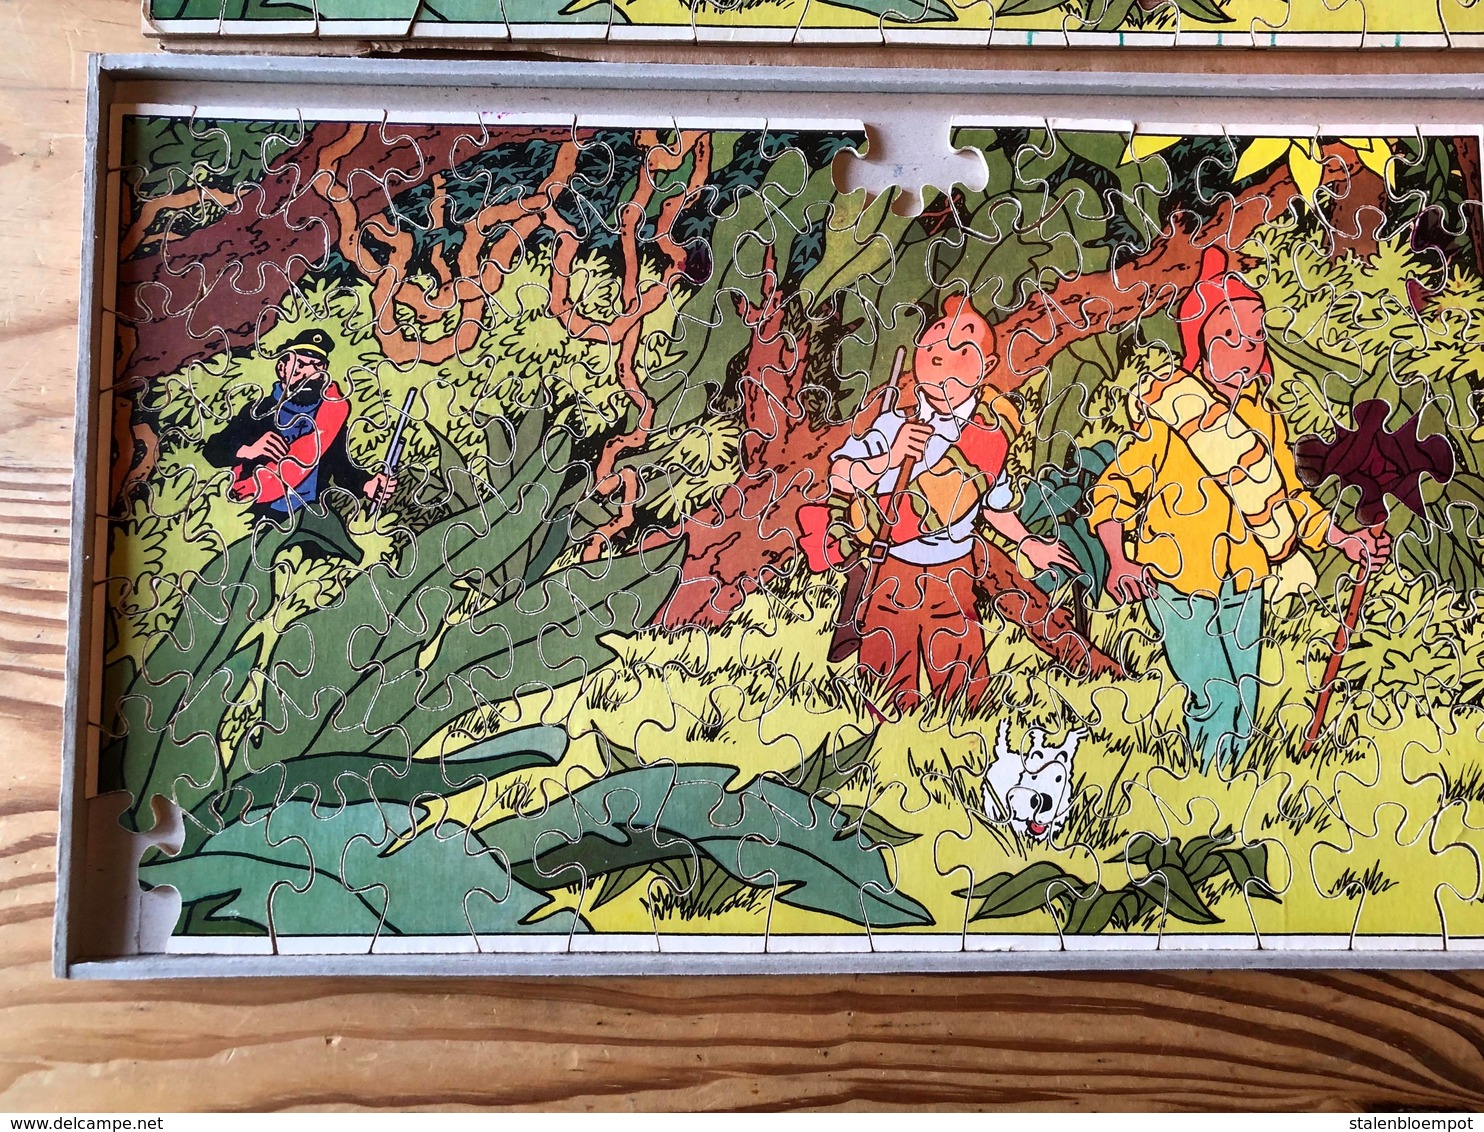 2 Puzzles Tintin - 2 Oude Kuifje Puzzels - Kuifje